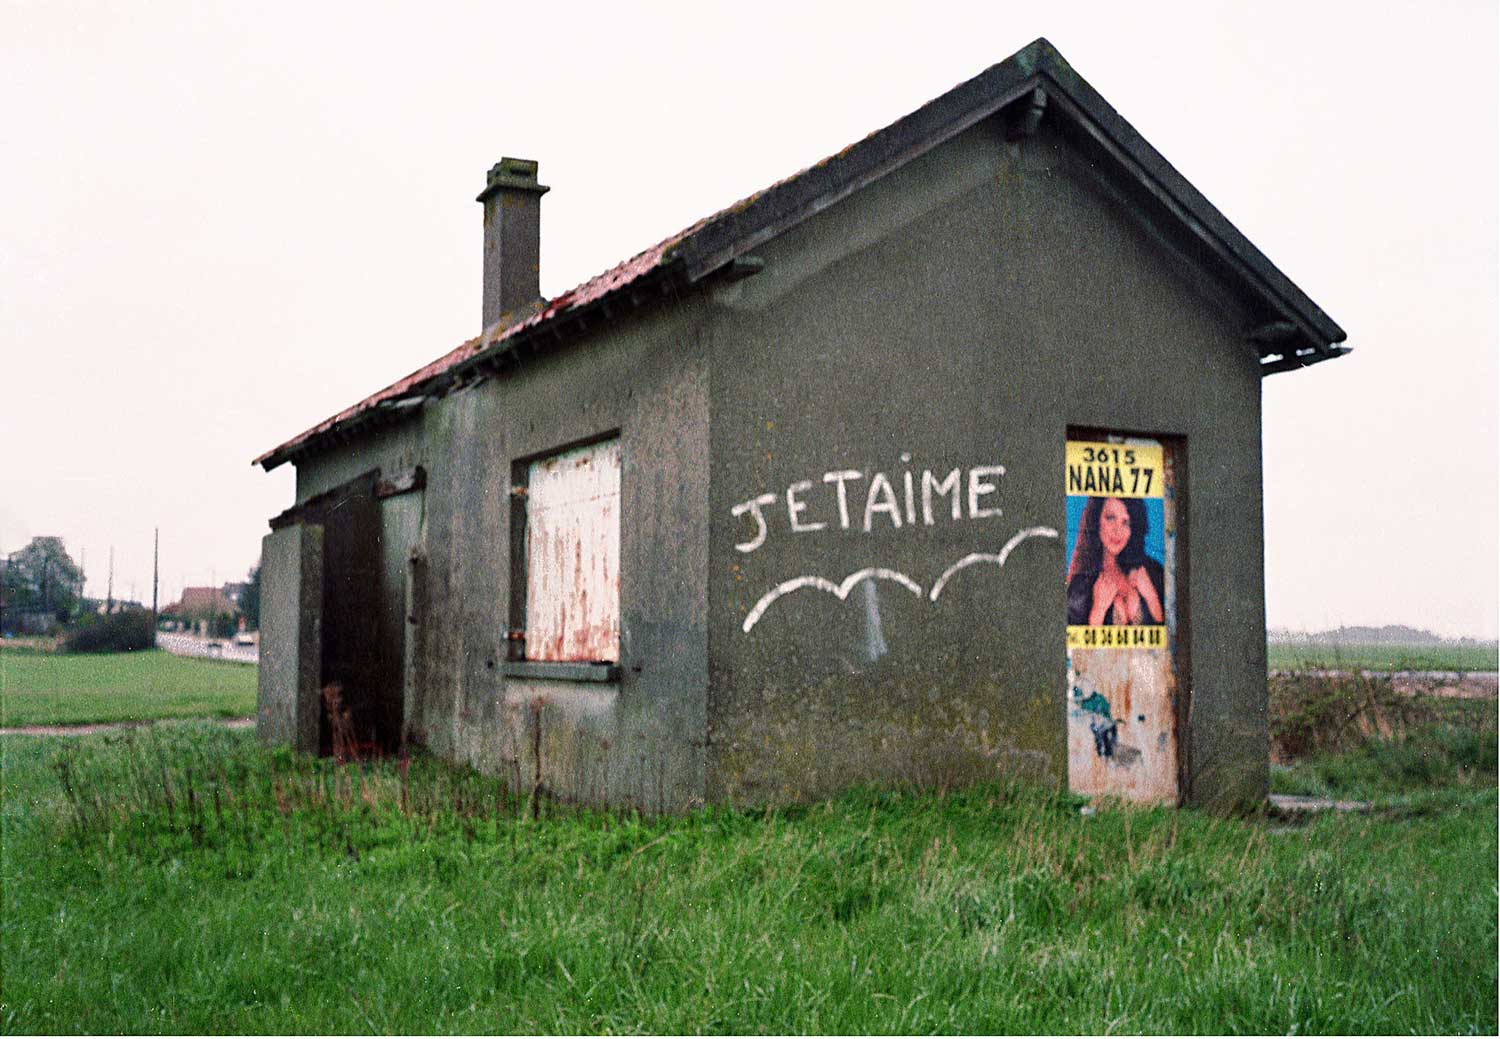 Petite maison - Je t'aime - 3615 NANA 77, 1988-94/2019 - Additional view